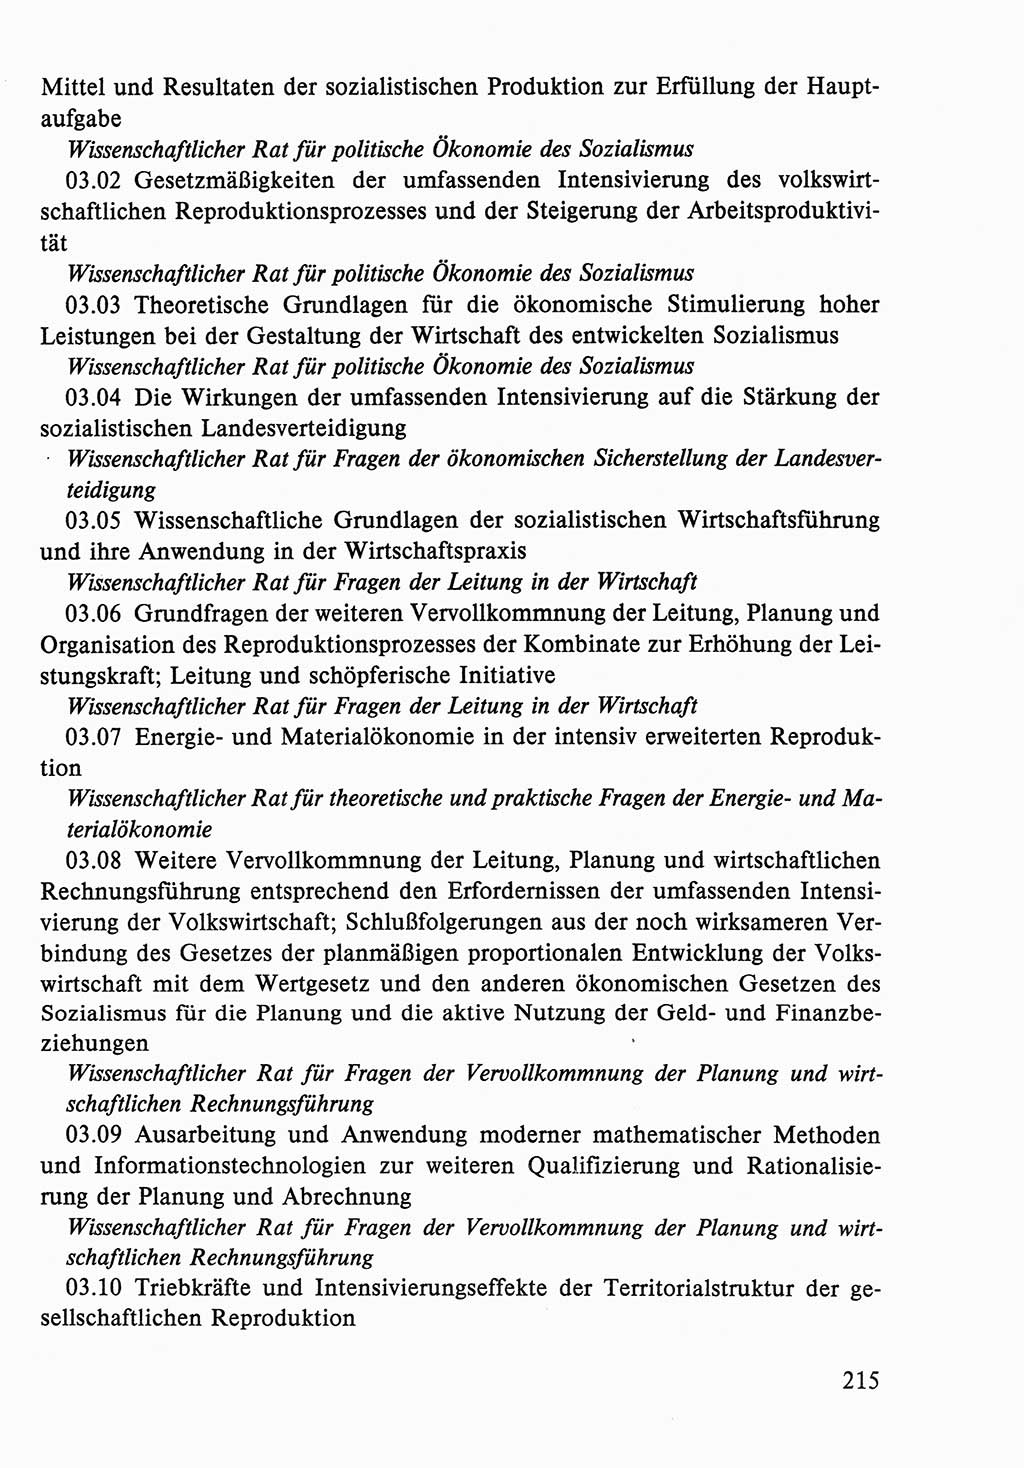 Dokumente der Sozialistischen Einheitspartei Deutschlands (SED) [Deutsche Demokratische Republik (DDR)] 1986-1987, Seite 215 (Dok. SED DDR 1986-1987, S. 215)